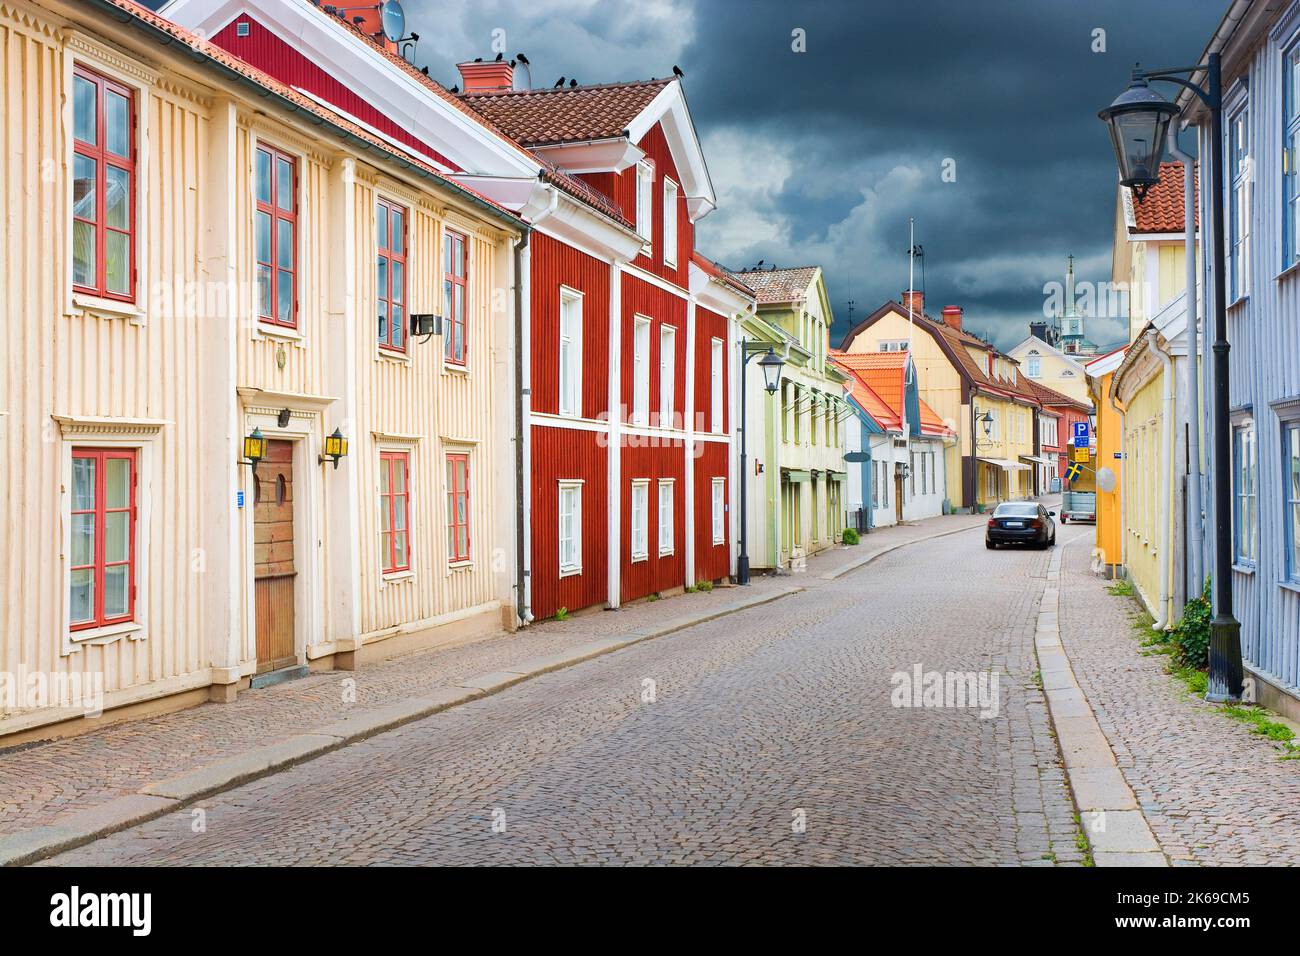 Colorati edifici storici in legno nella strada principale di Vimmerby, Svezia. Vimmerby è attualmente un'attrazione turistica grazie ai collegamenti storici con S Foto Stock